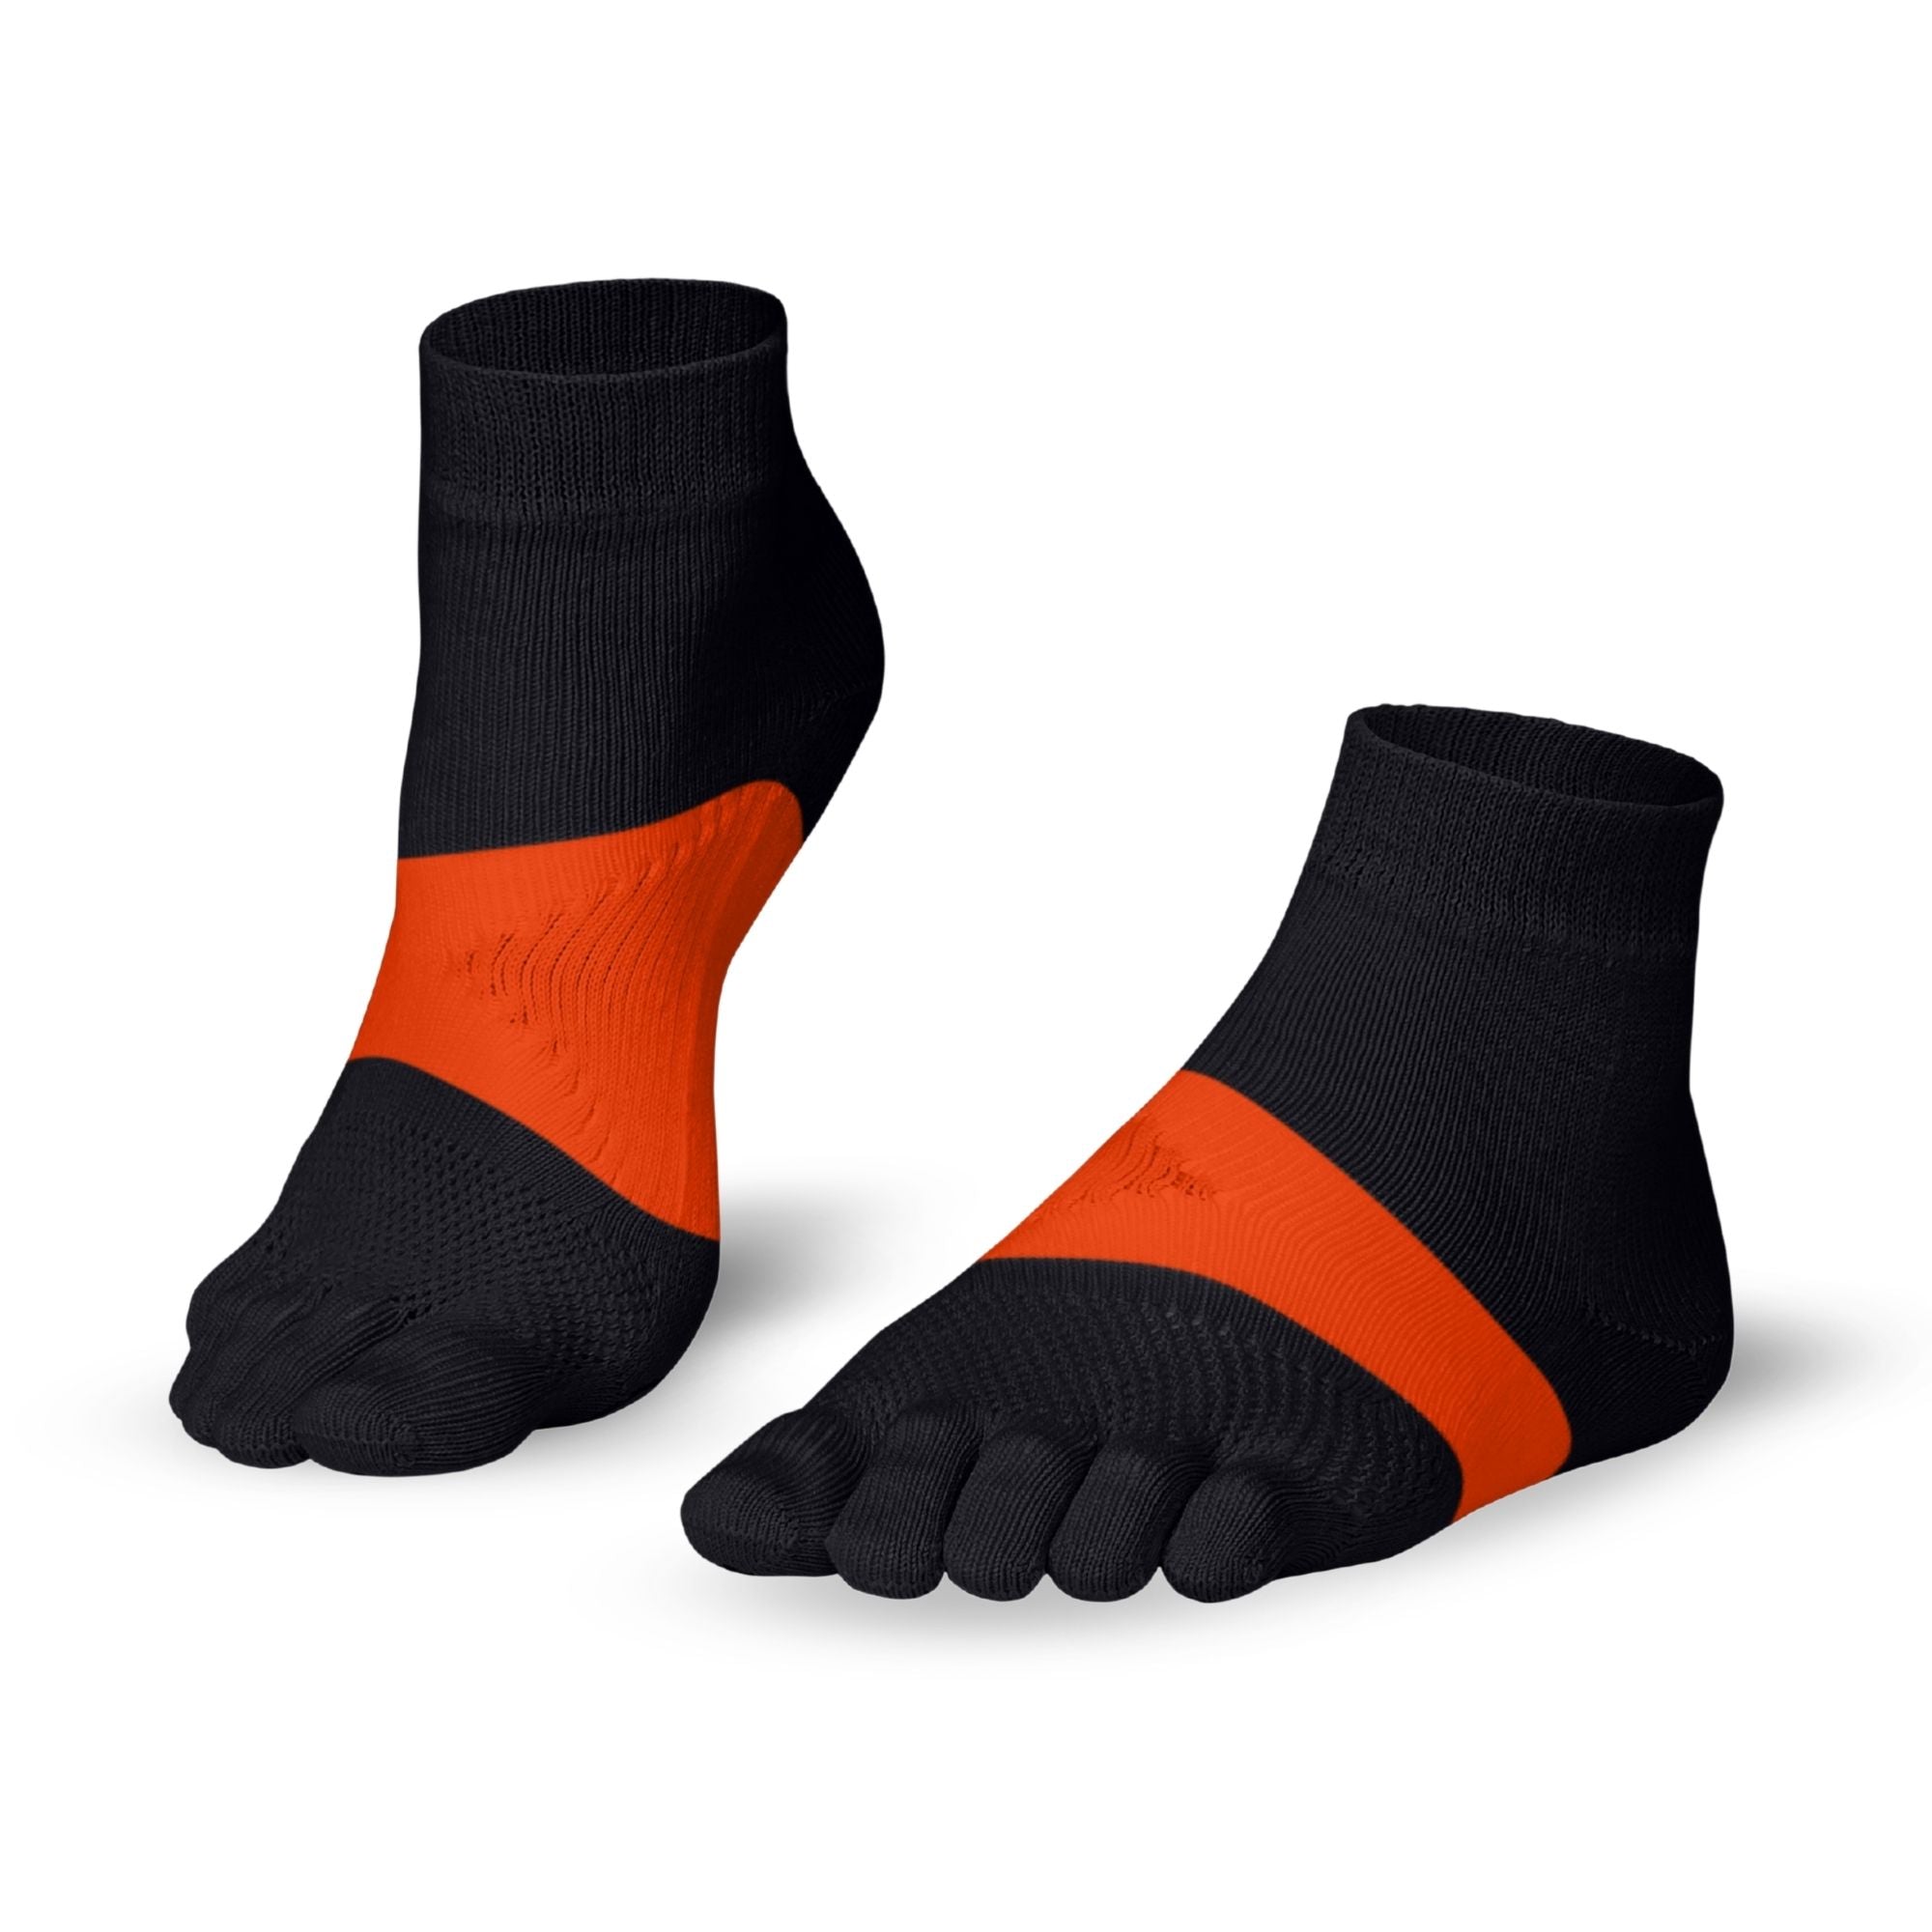 Knitido Marathon Zehensocken für Sport und lange Distanzläufe - grau / orange